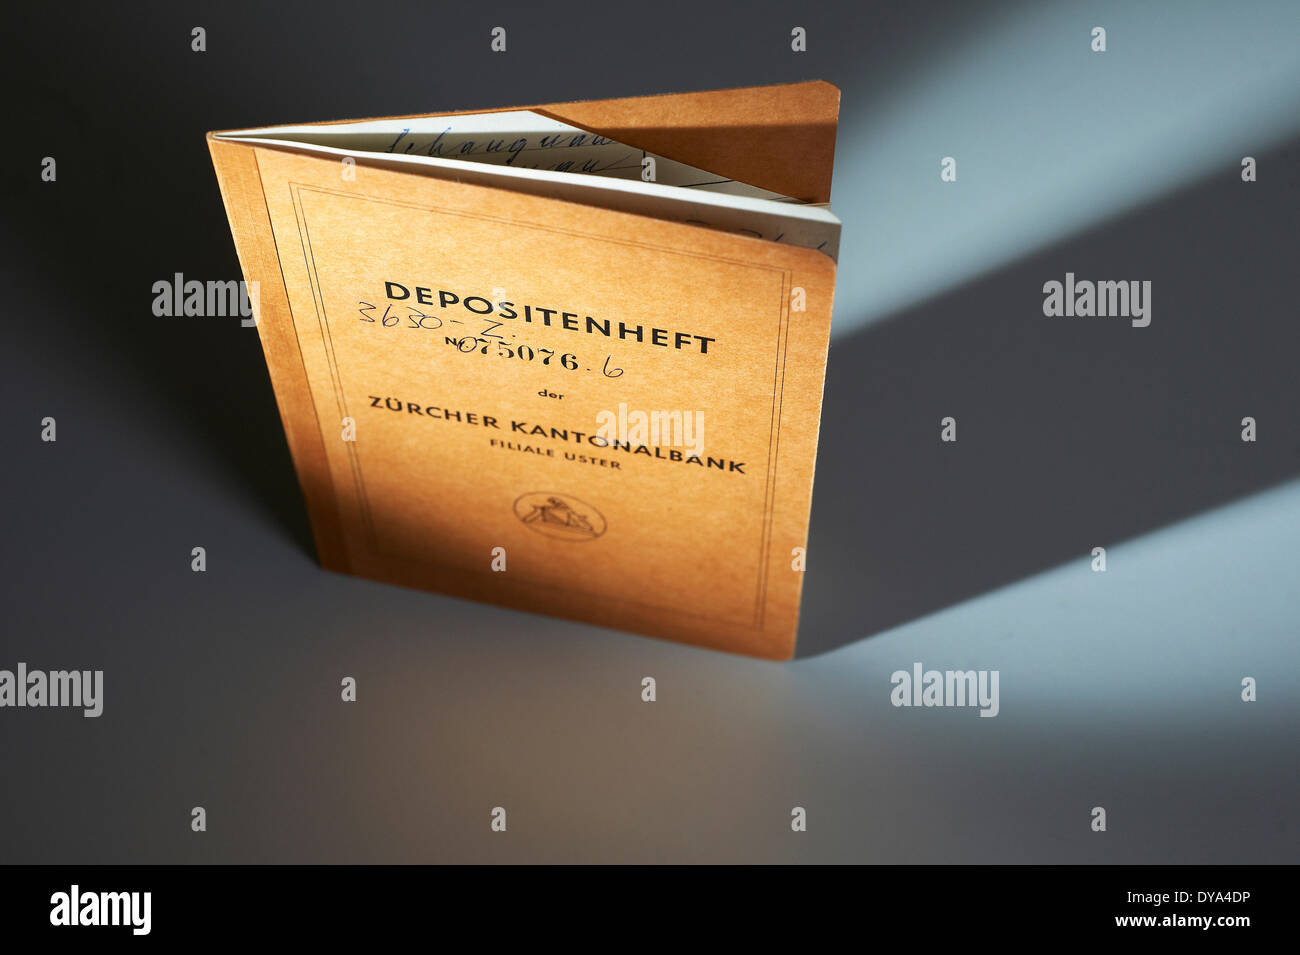 Libretto di deposito immagini e fotografie stock ad alta risoluzione - Alamy